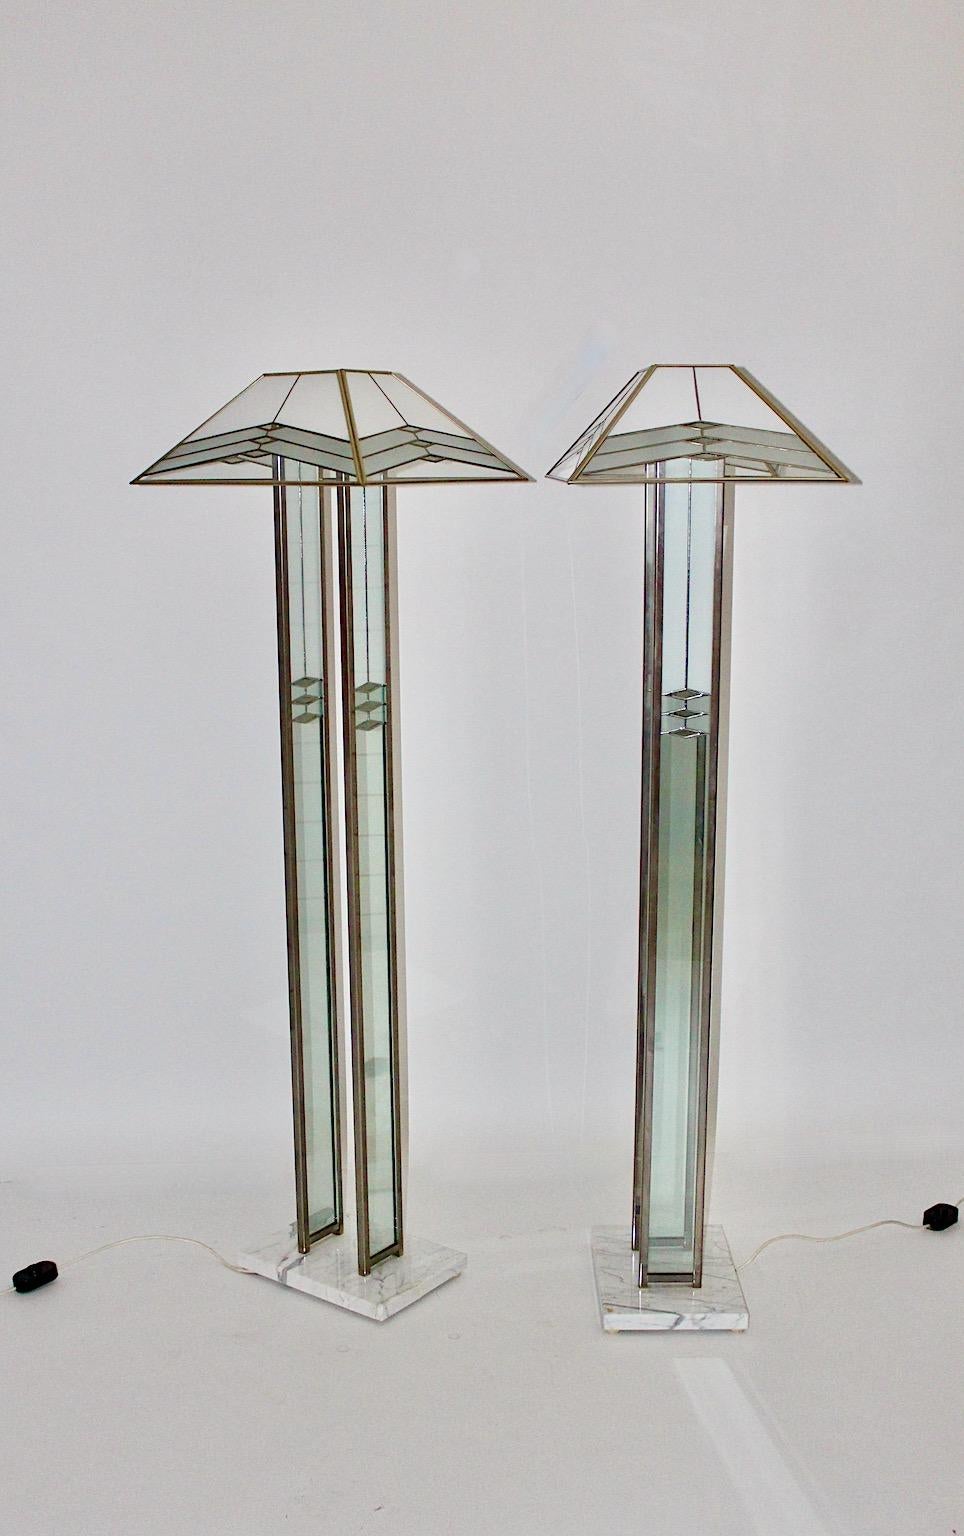 Modernes Paar Stehlampen im Hollywood-Regency-Stil von Albano Poli für Poliarte, Italien 1980er Jahre, aus Marmor, Glas, verchromtem Metall und Plexiglas.
Elegantes Paar Stehlampen in milchigen und grauen Farbtönen, wenn man sich in diese